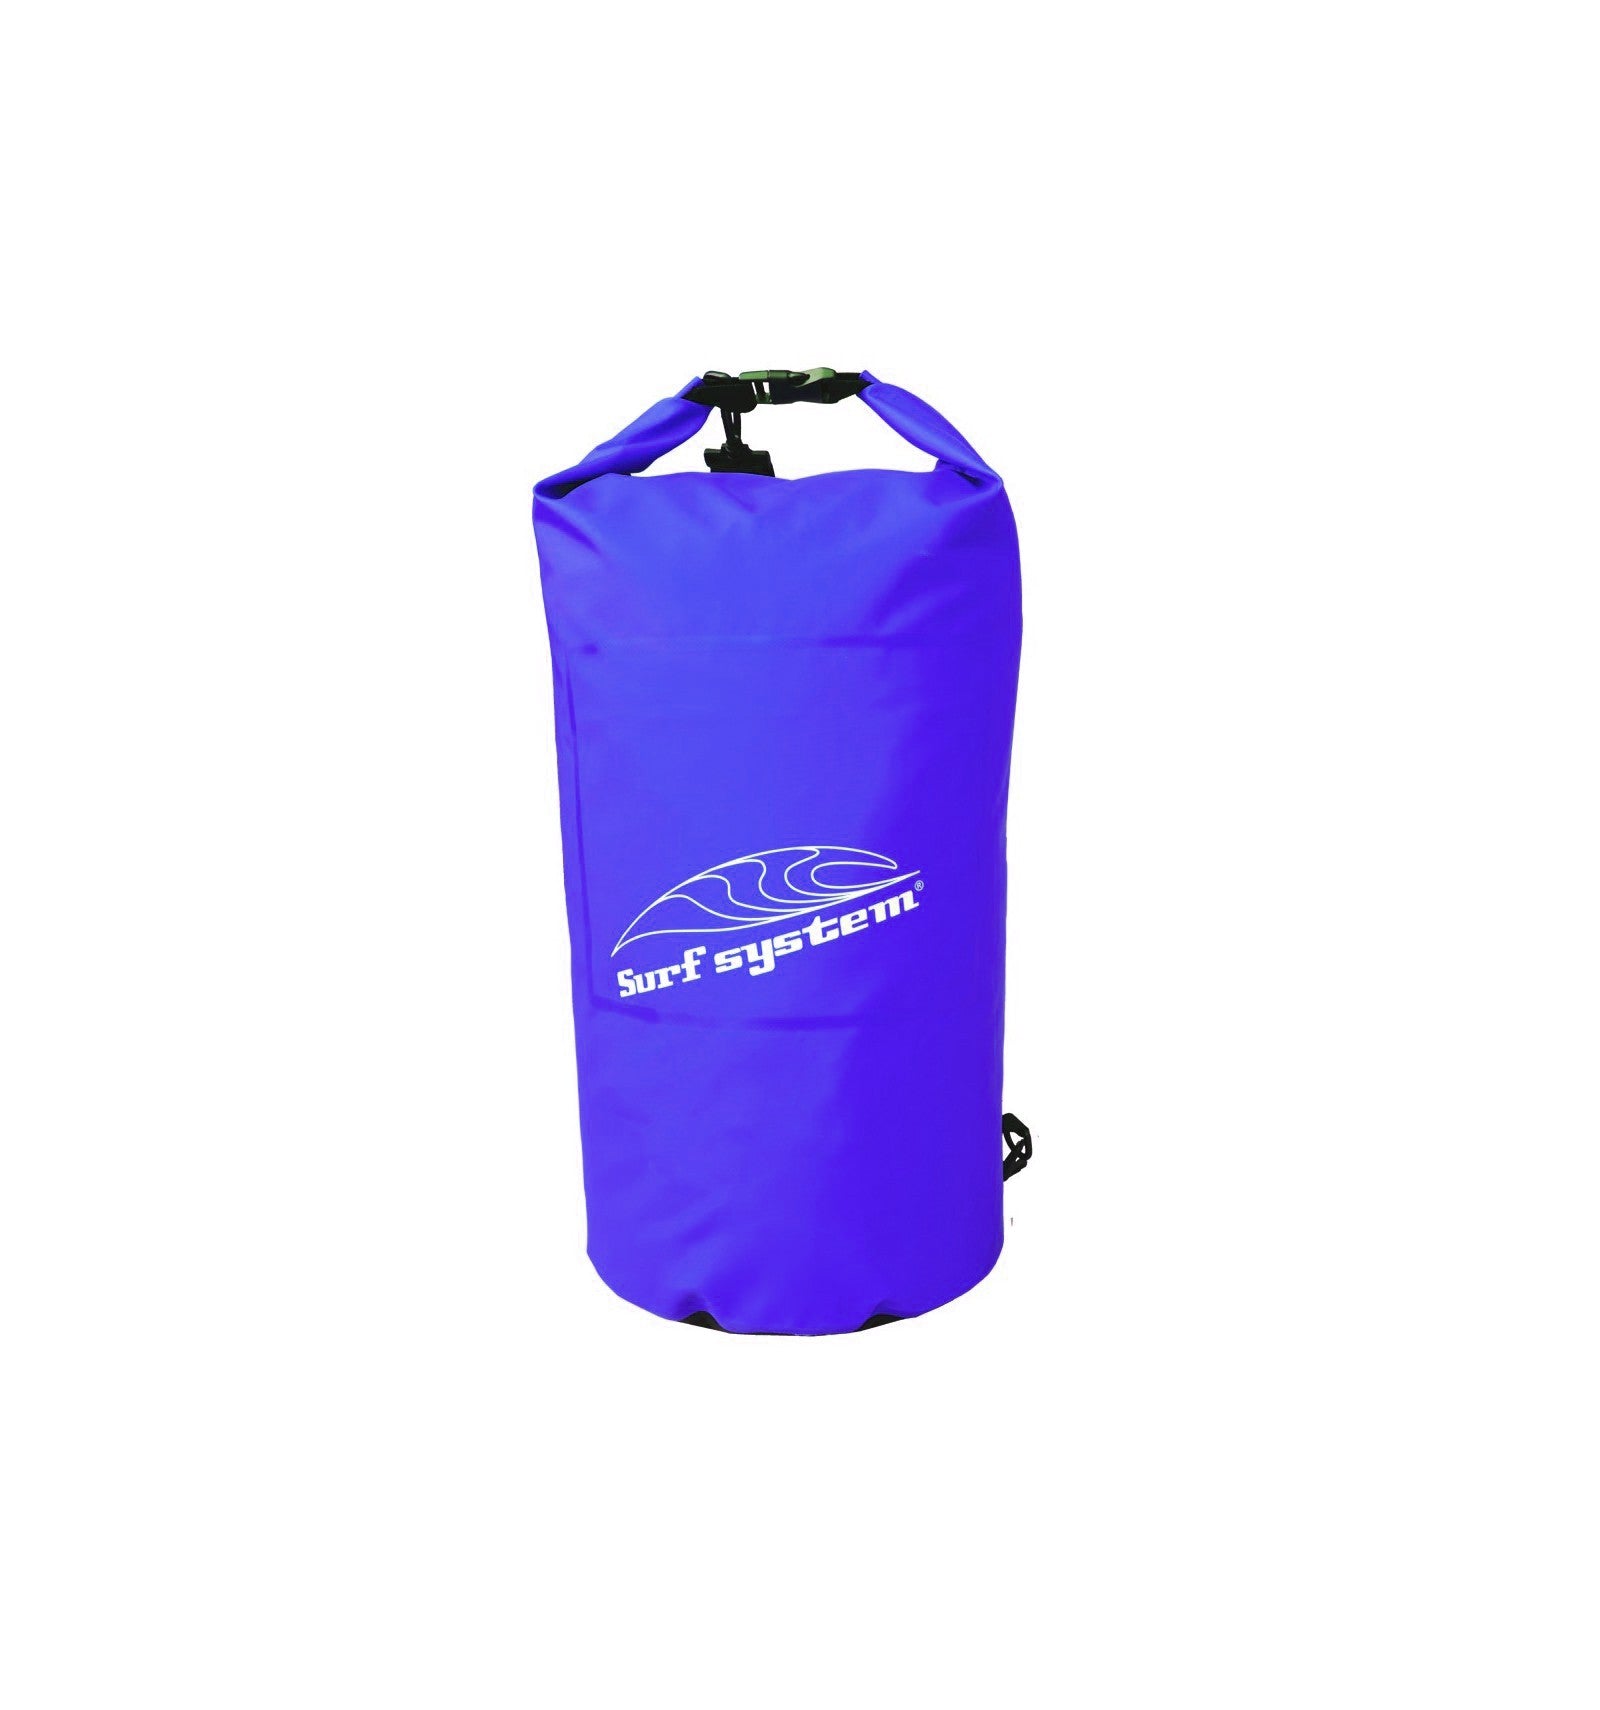 SURF SYSTEM - Waterproof bag 50L - Blue